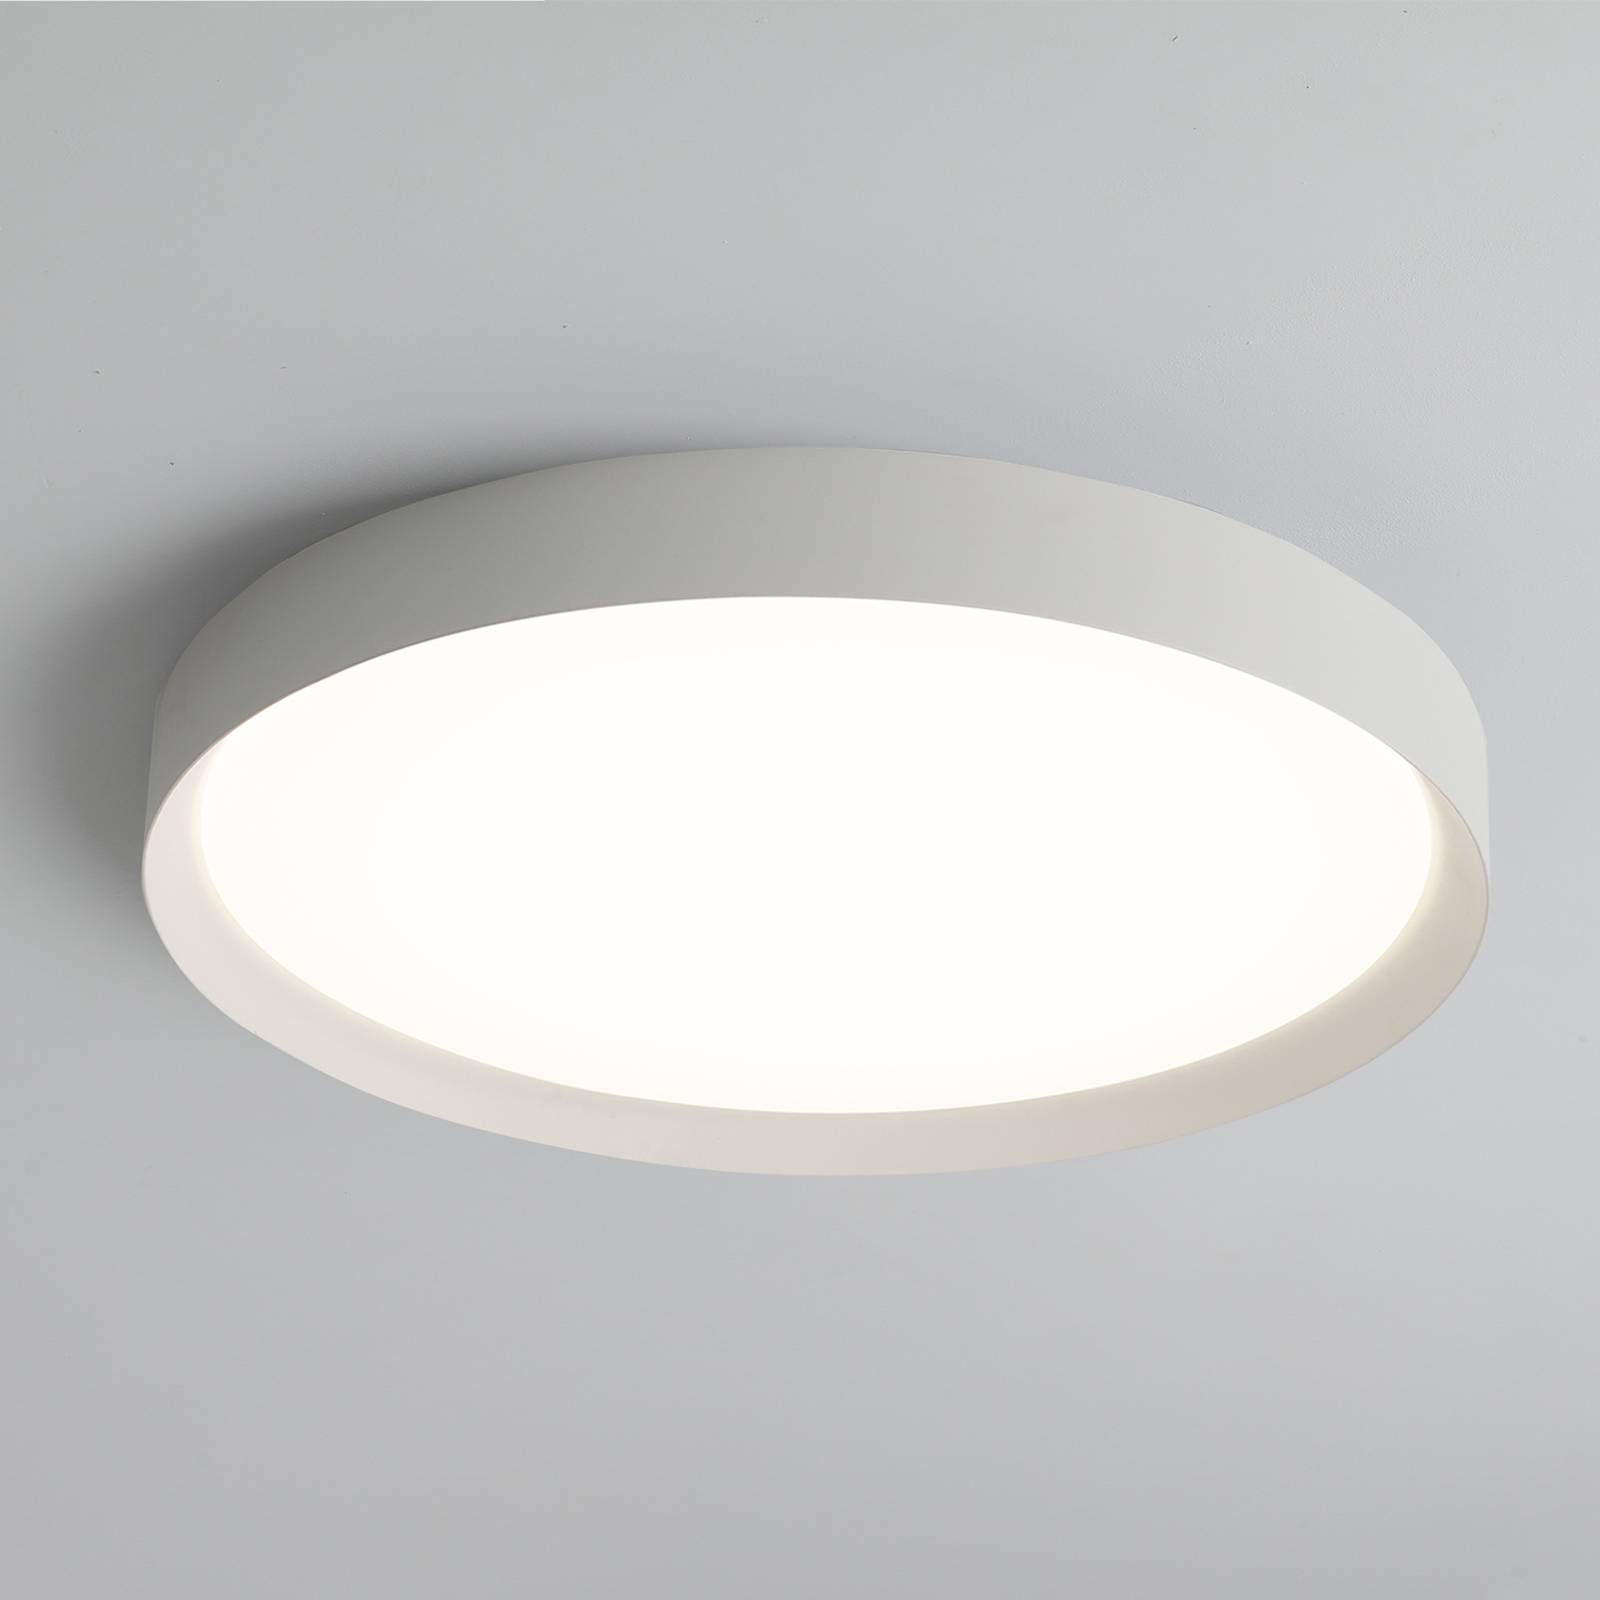 Acb iluminación led mennyezeti lámpa minsk, ø 60 cm, casambi, 42 w, fehér